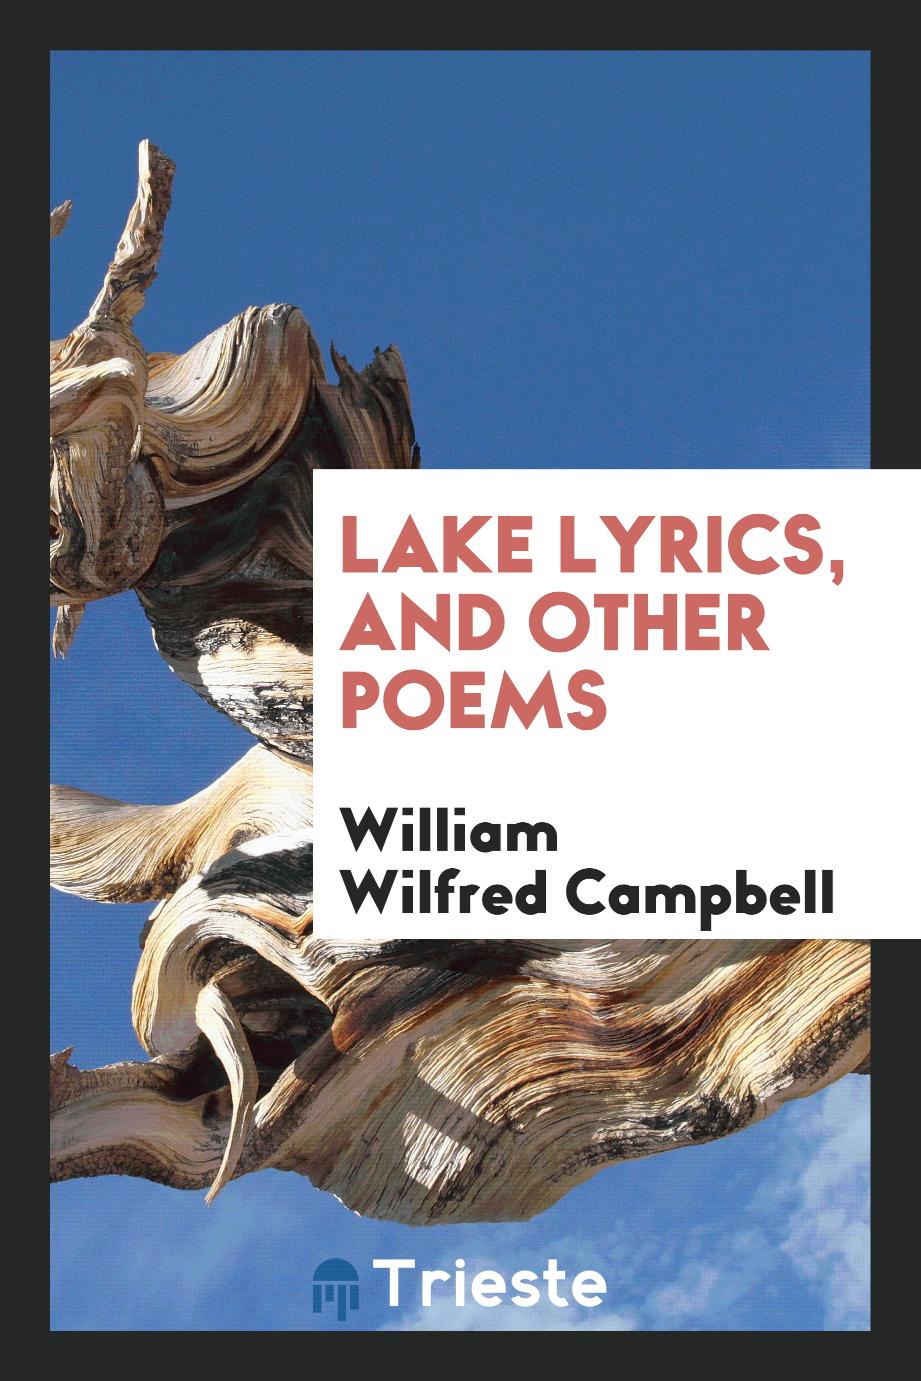 Lake lyrics, and other poems